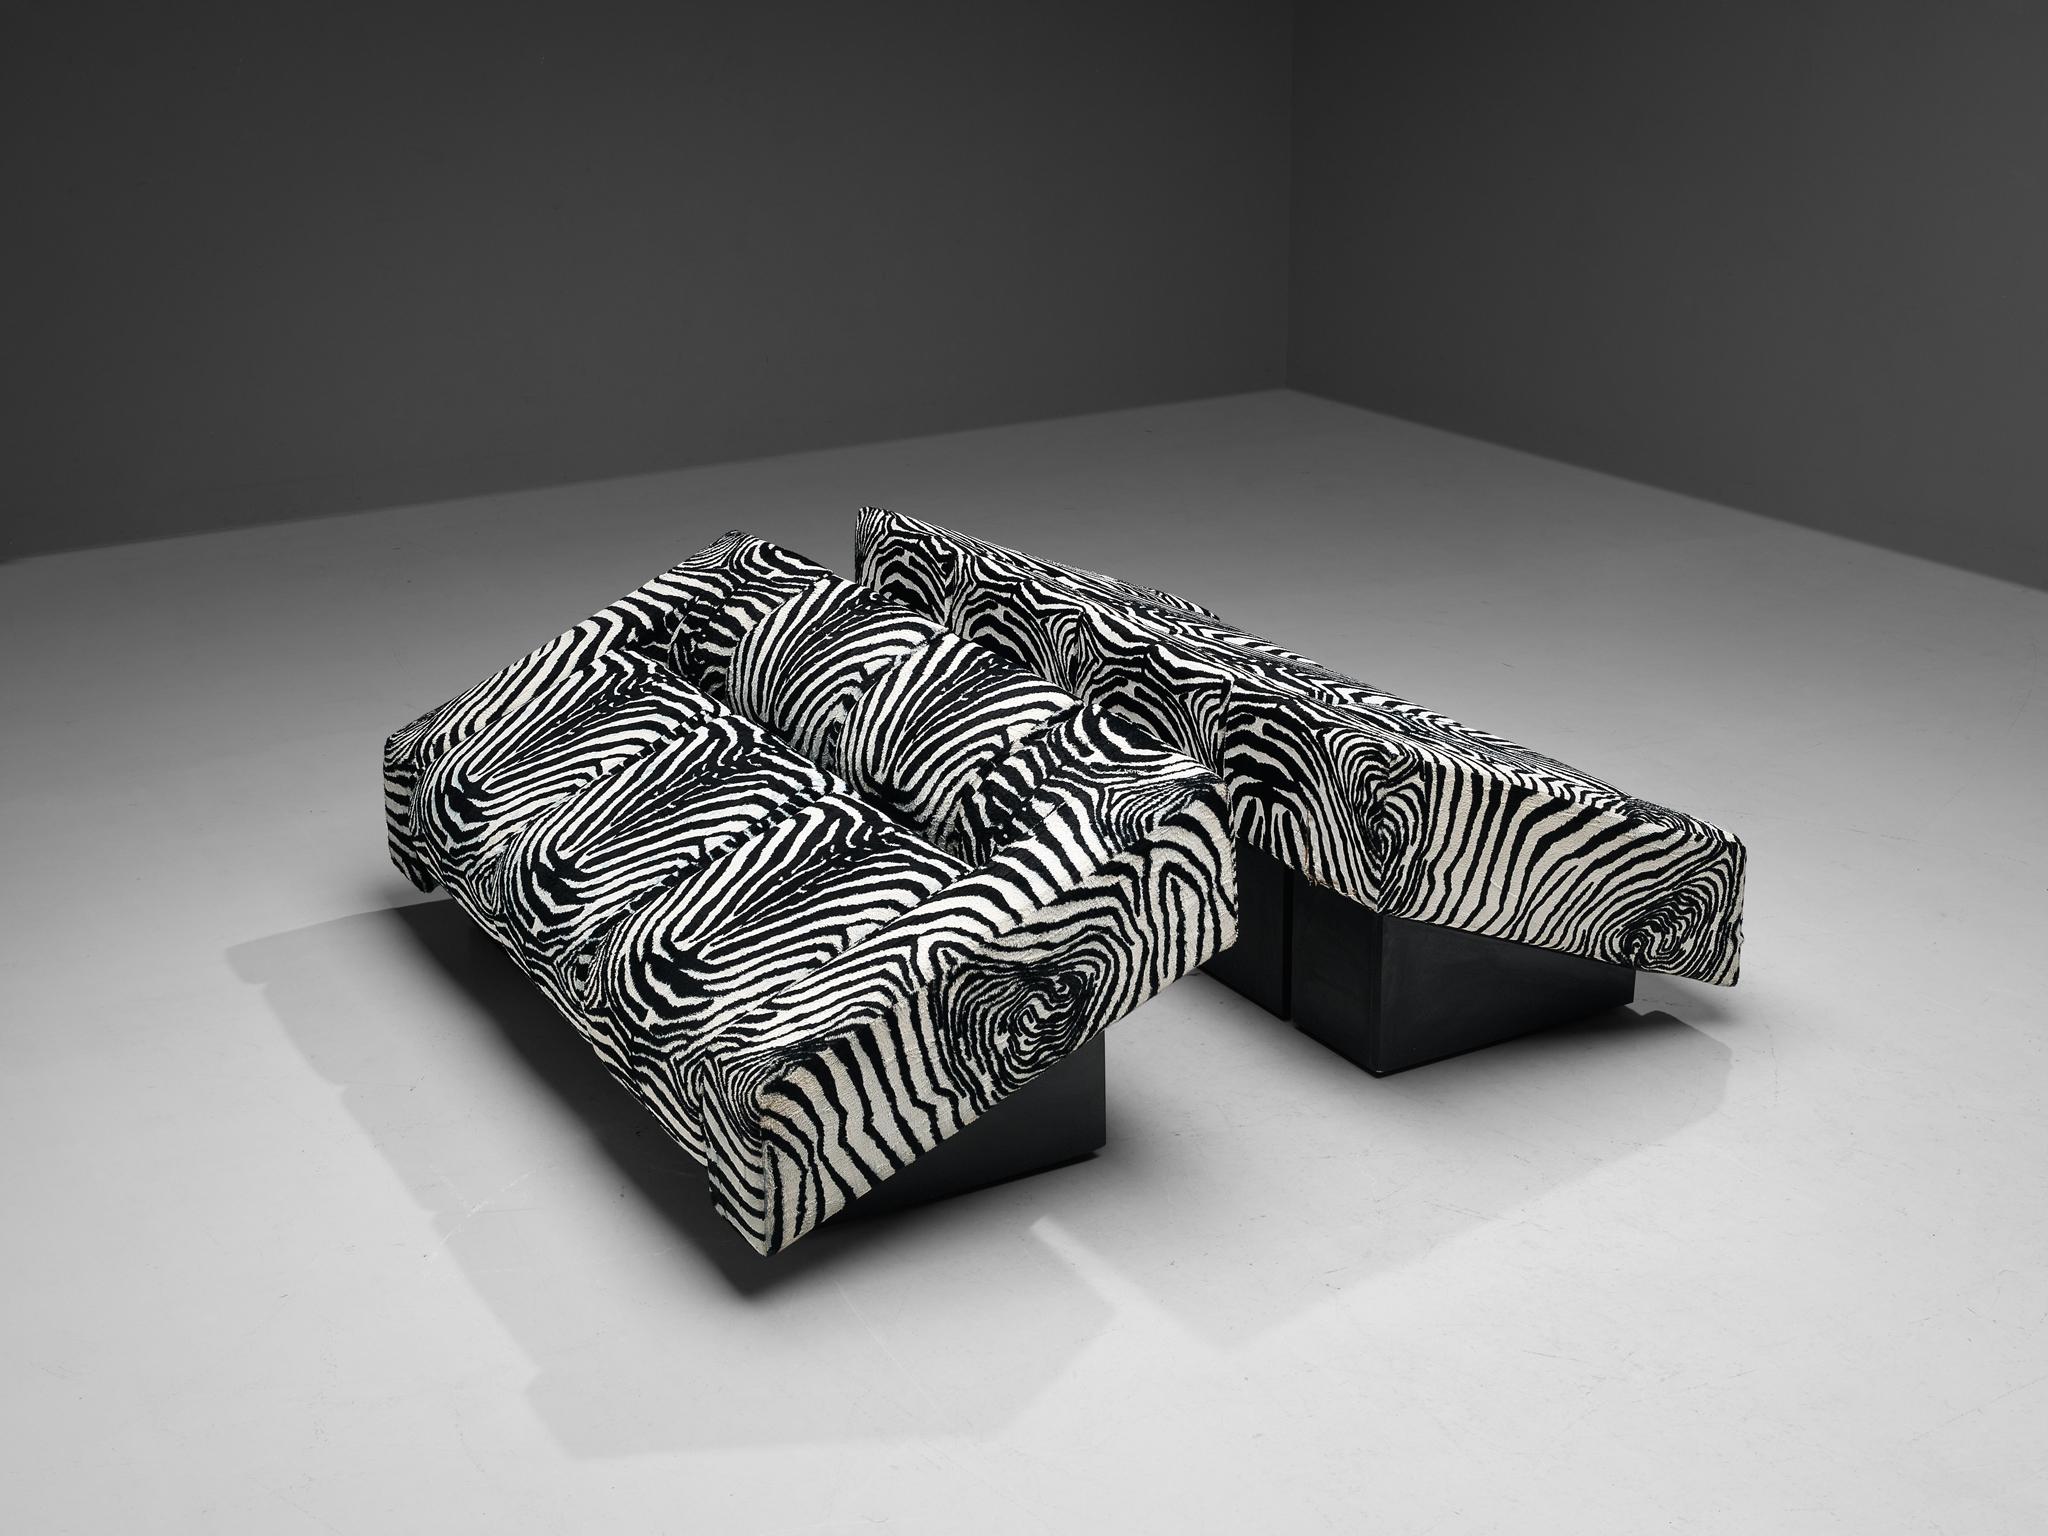 Mario Botta for Alias Pair of 'Obliqua' Sofas in Zebra Print Upholstery  For Sale 3